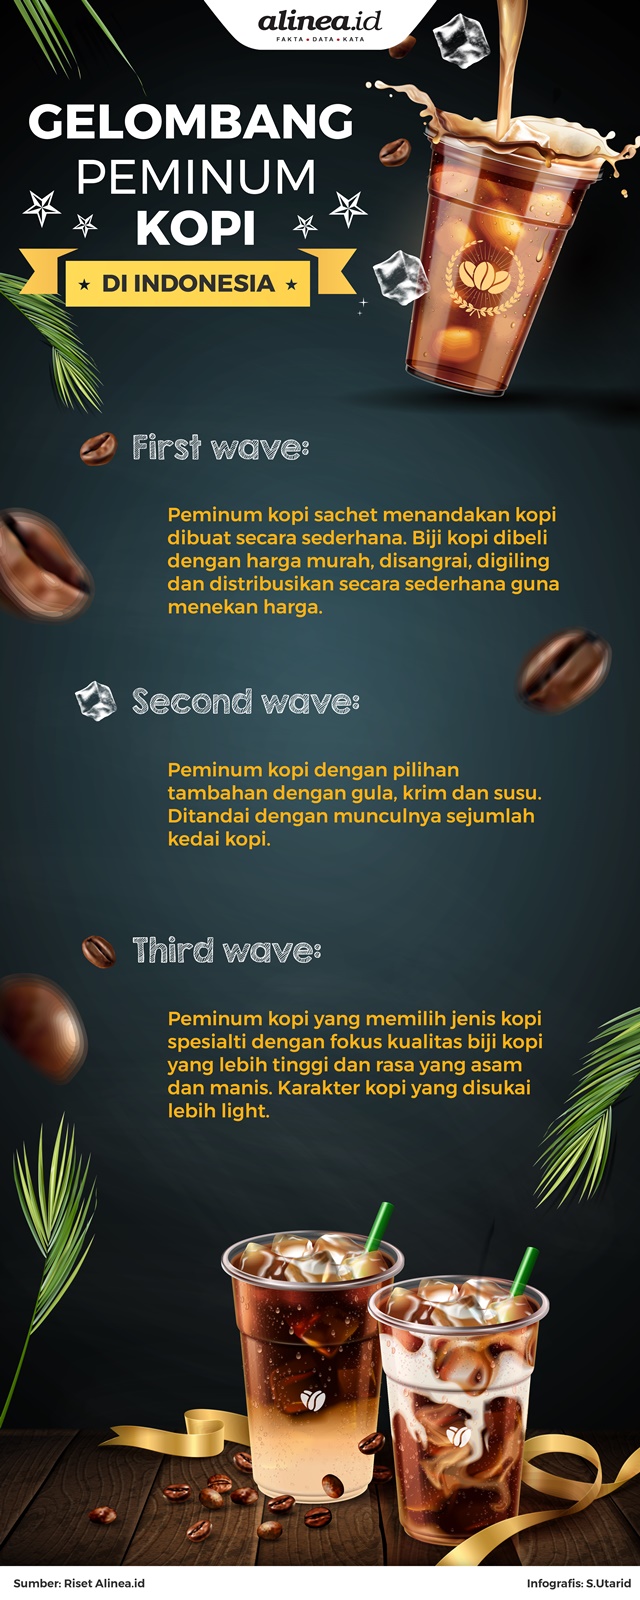 Gelombang peminum kopi yang terjadi di Indonesia./Alinea.id